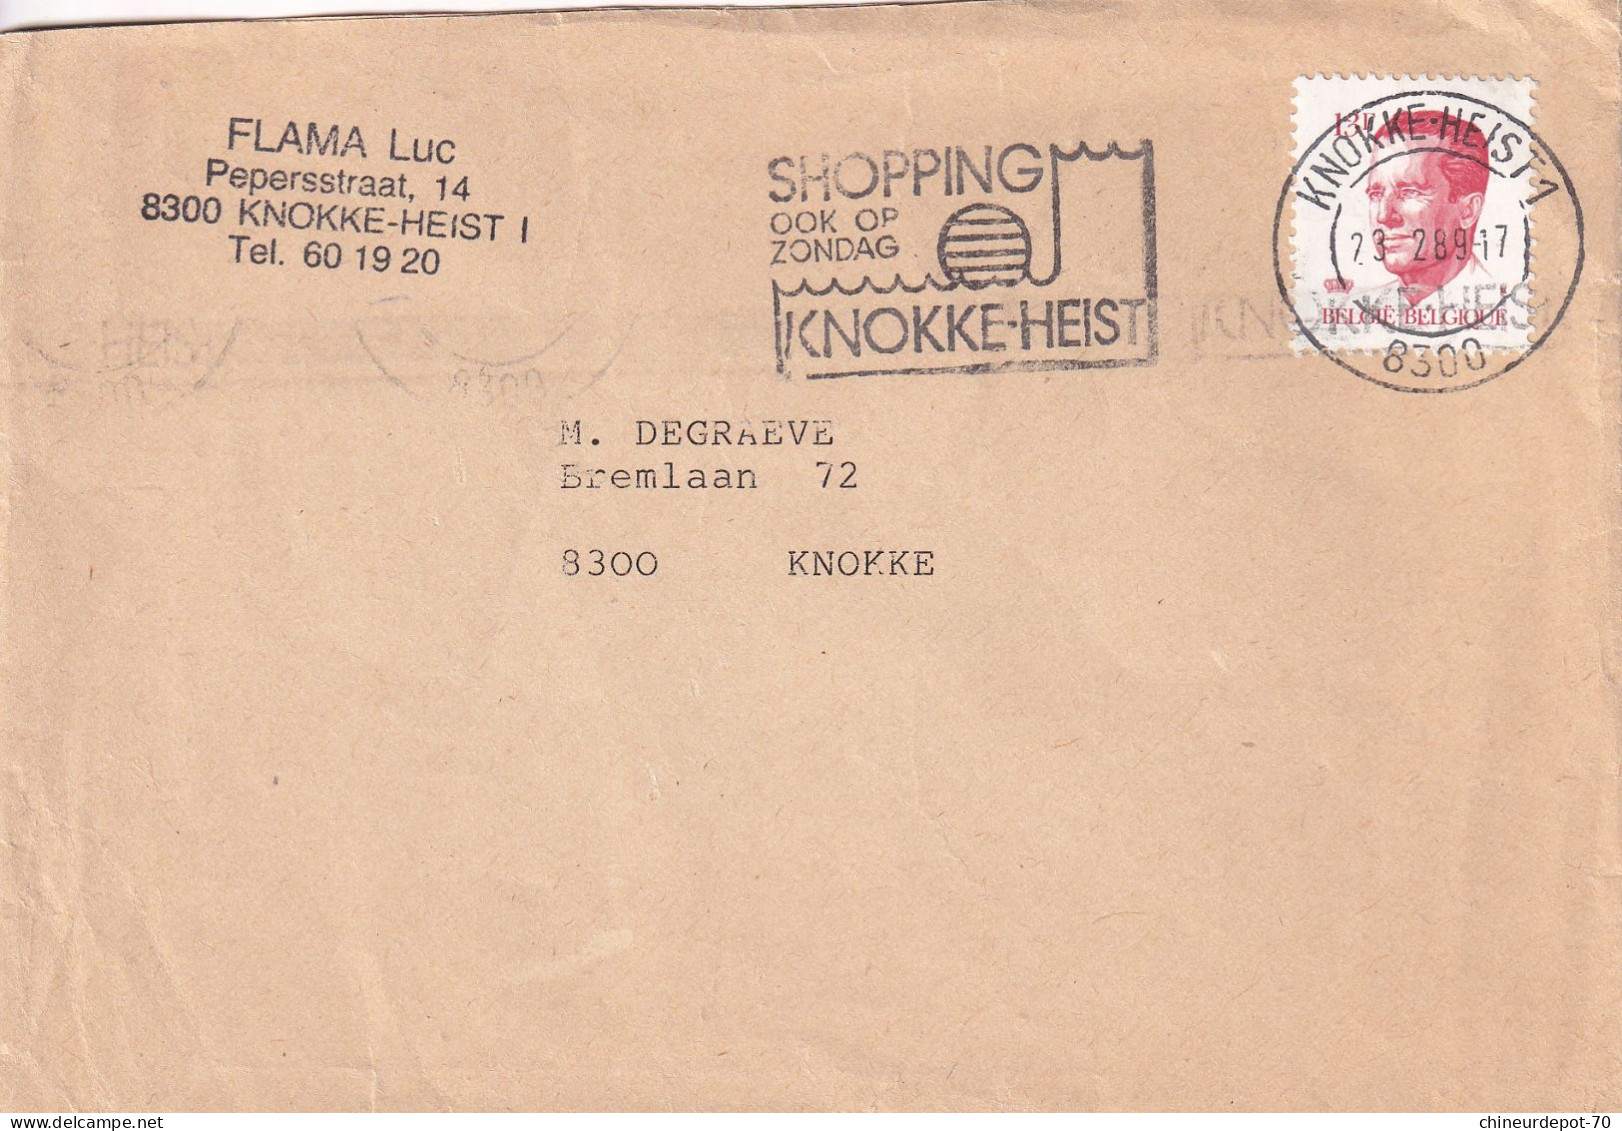 Flama Luc Knokke-Heist   Belgique - Enveloppes